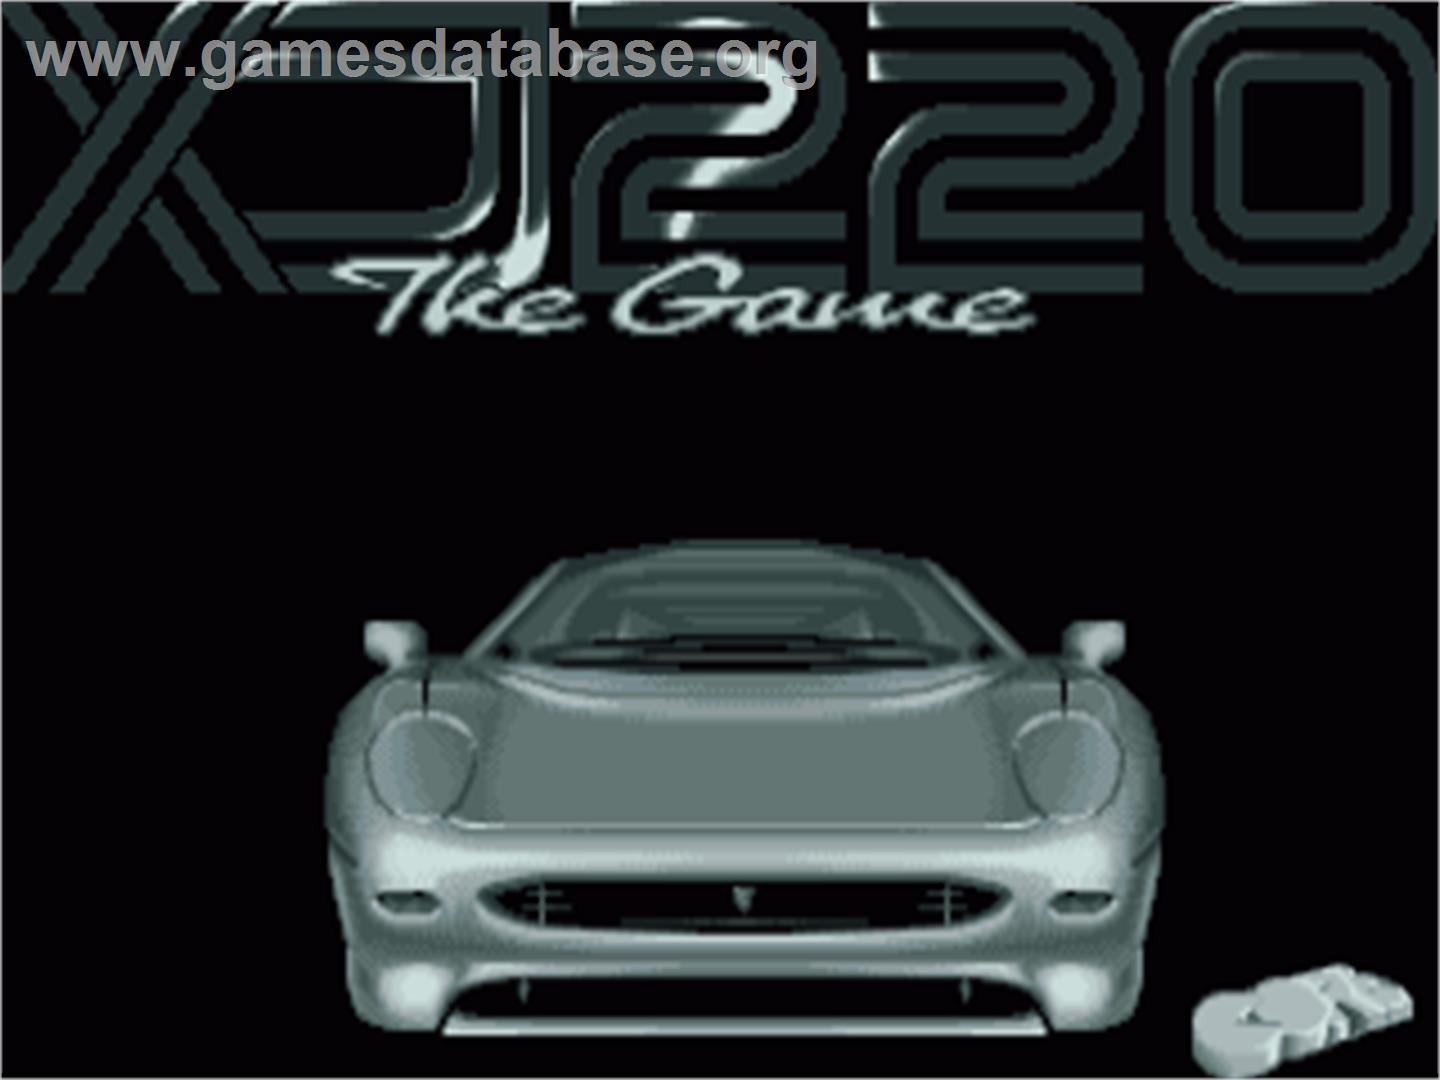 Jaguar XJ220 - Commodore Amiga - Artwork - Title Screen